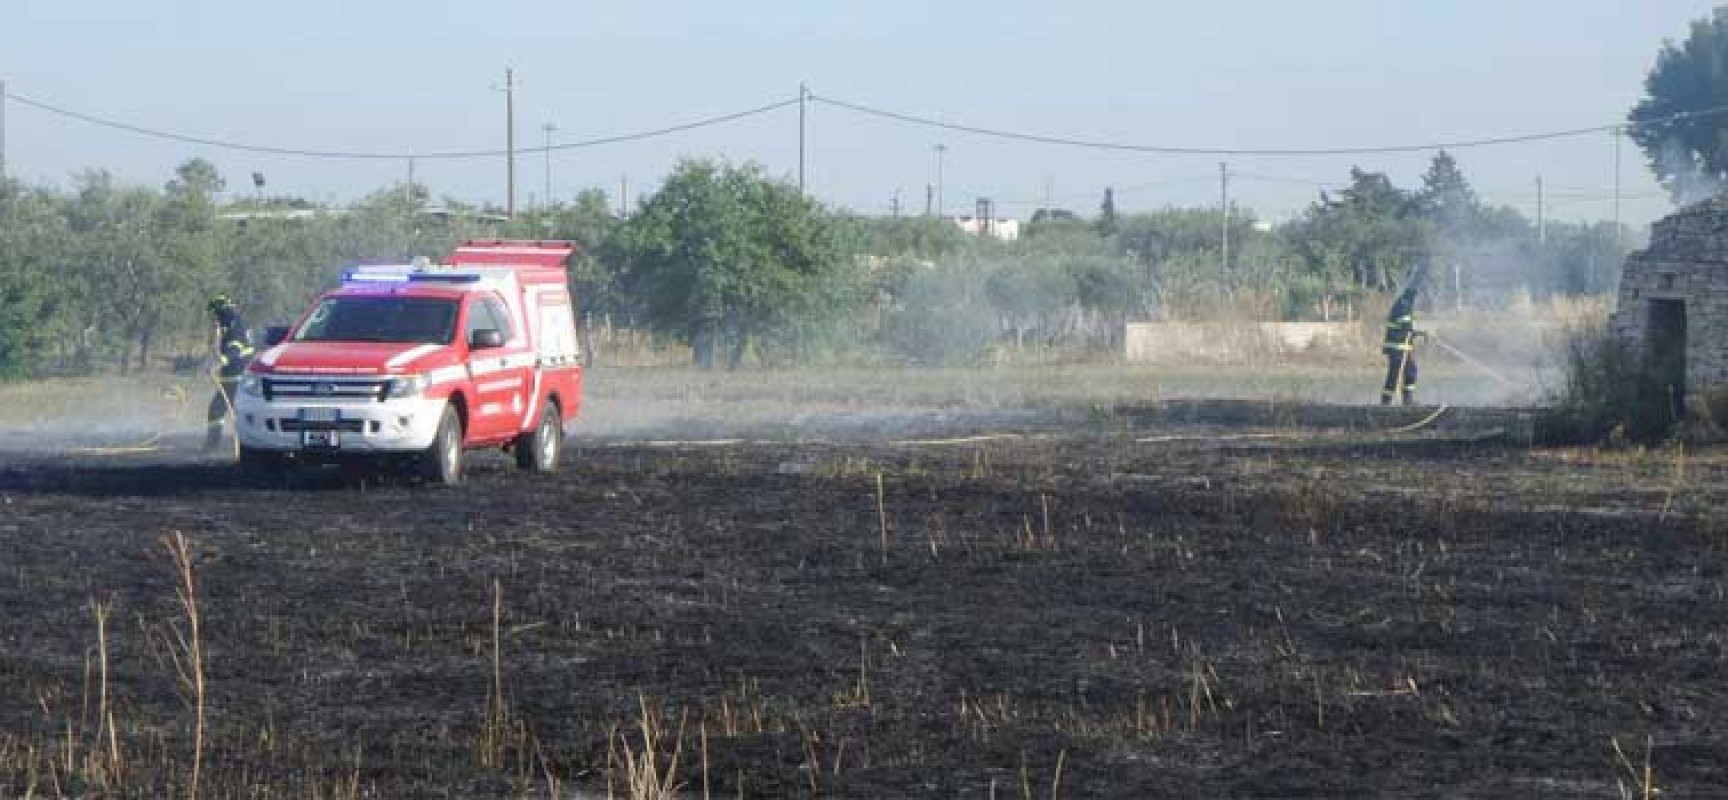 Incendio in un terreno incolto di via vecchia Corato, intervenuti Oer e Polizia municipale